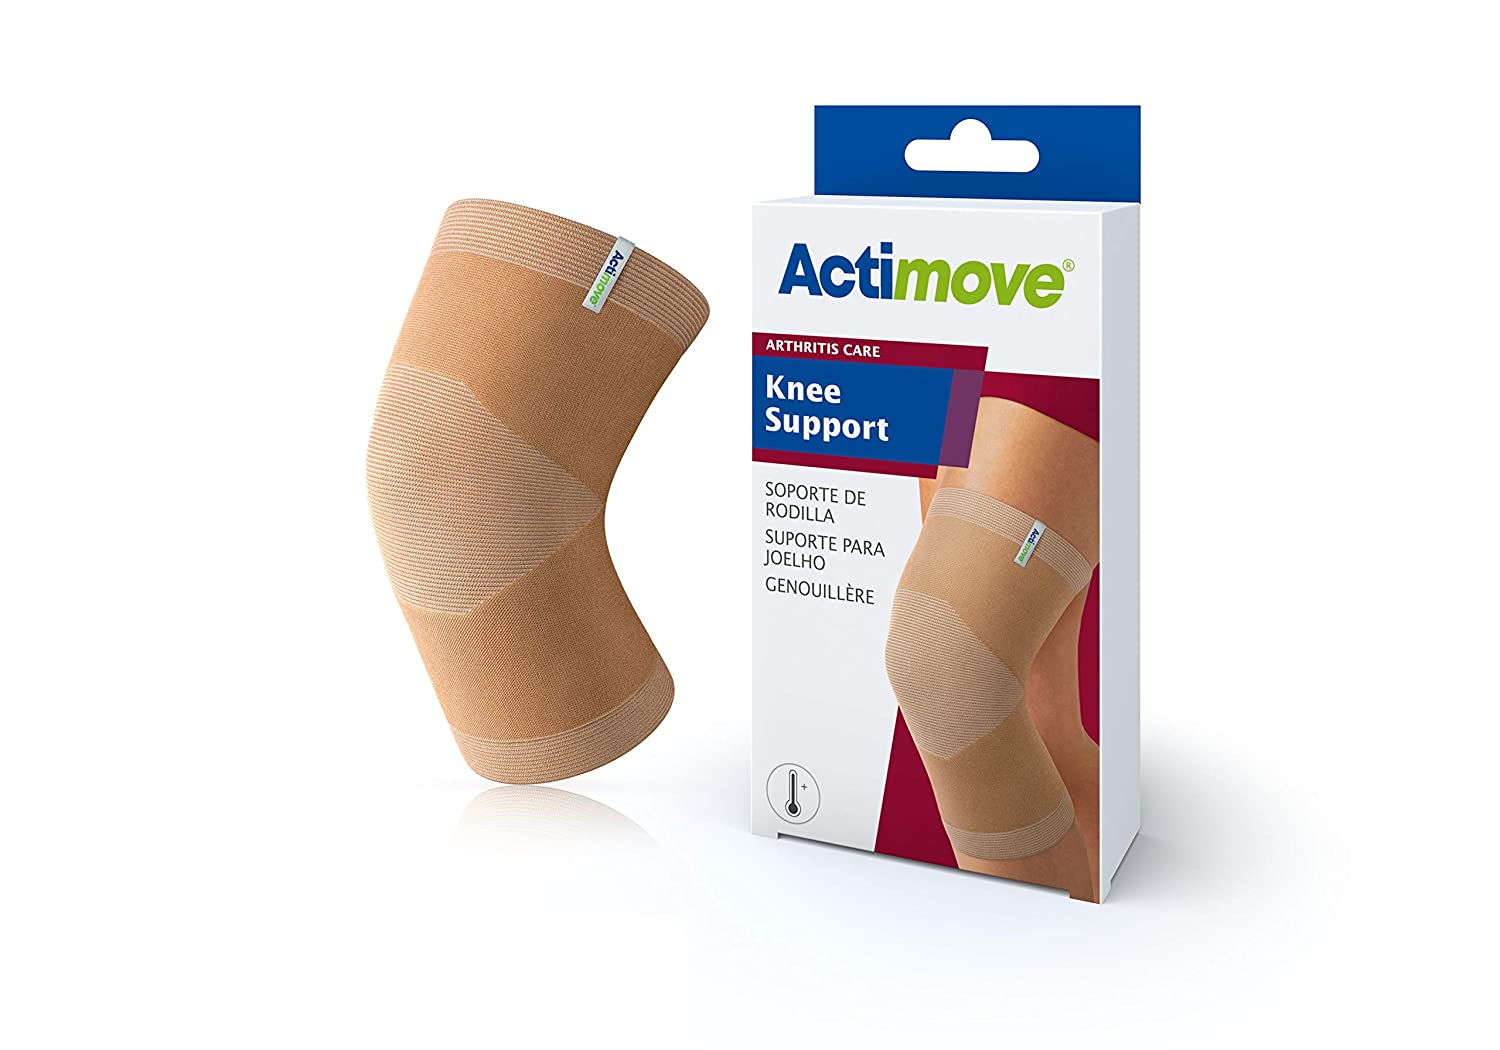 Actimove Arthritis Pain Relief Support, Knee, Lg, Beige - Ea/1